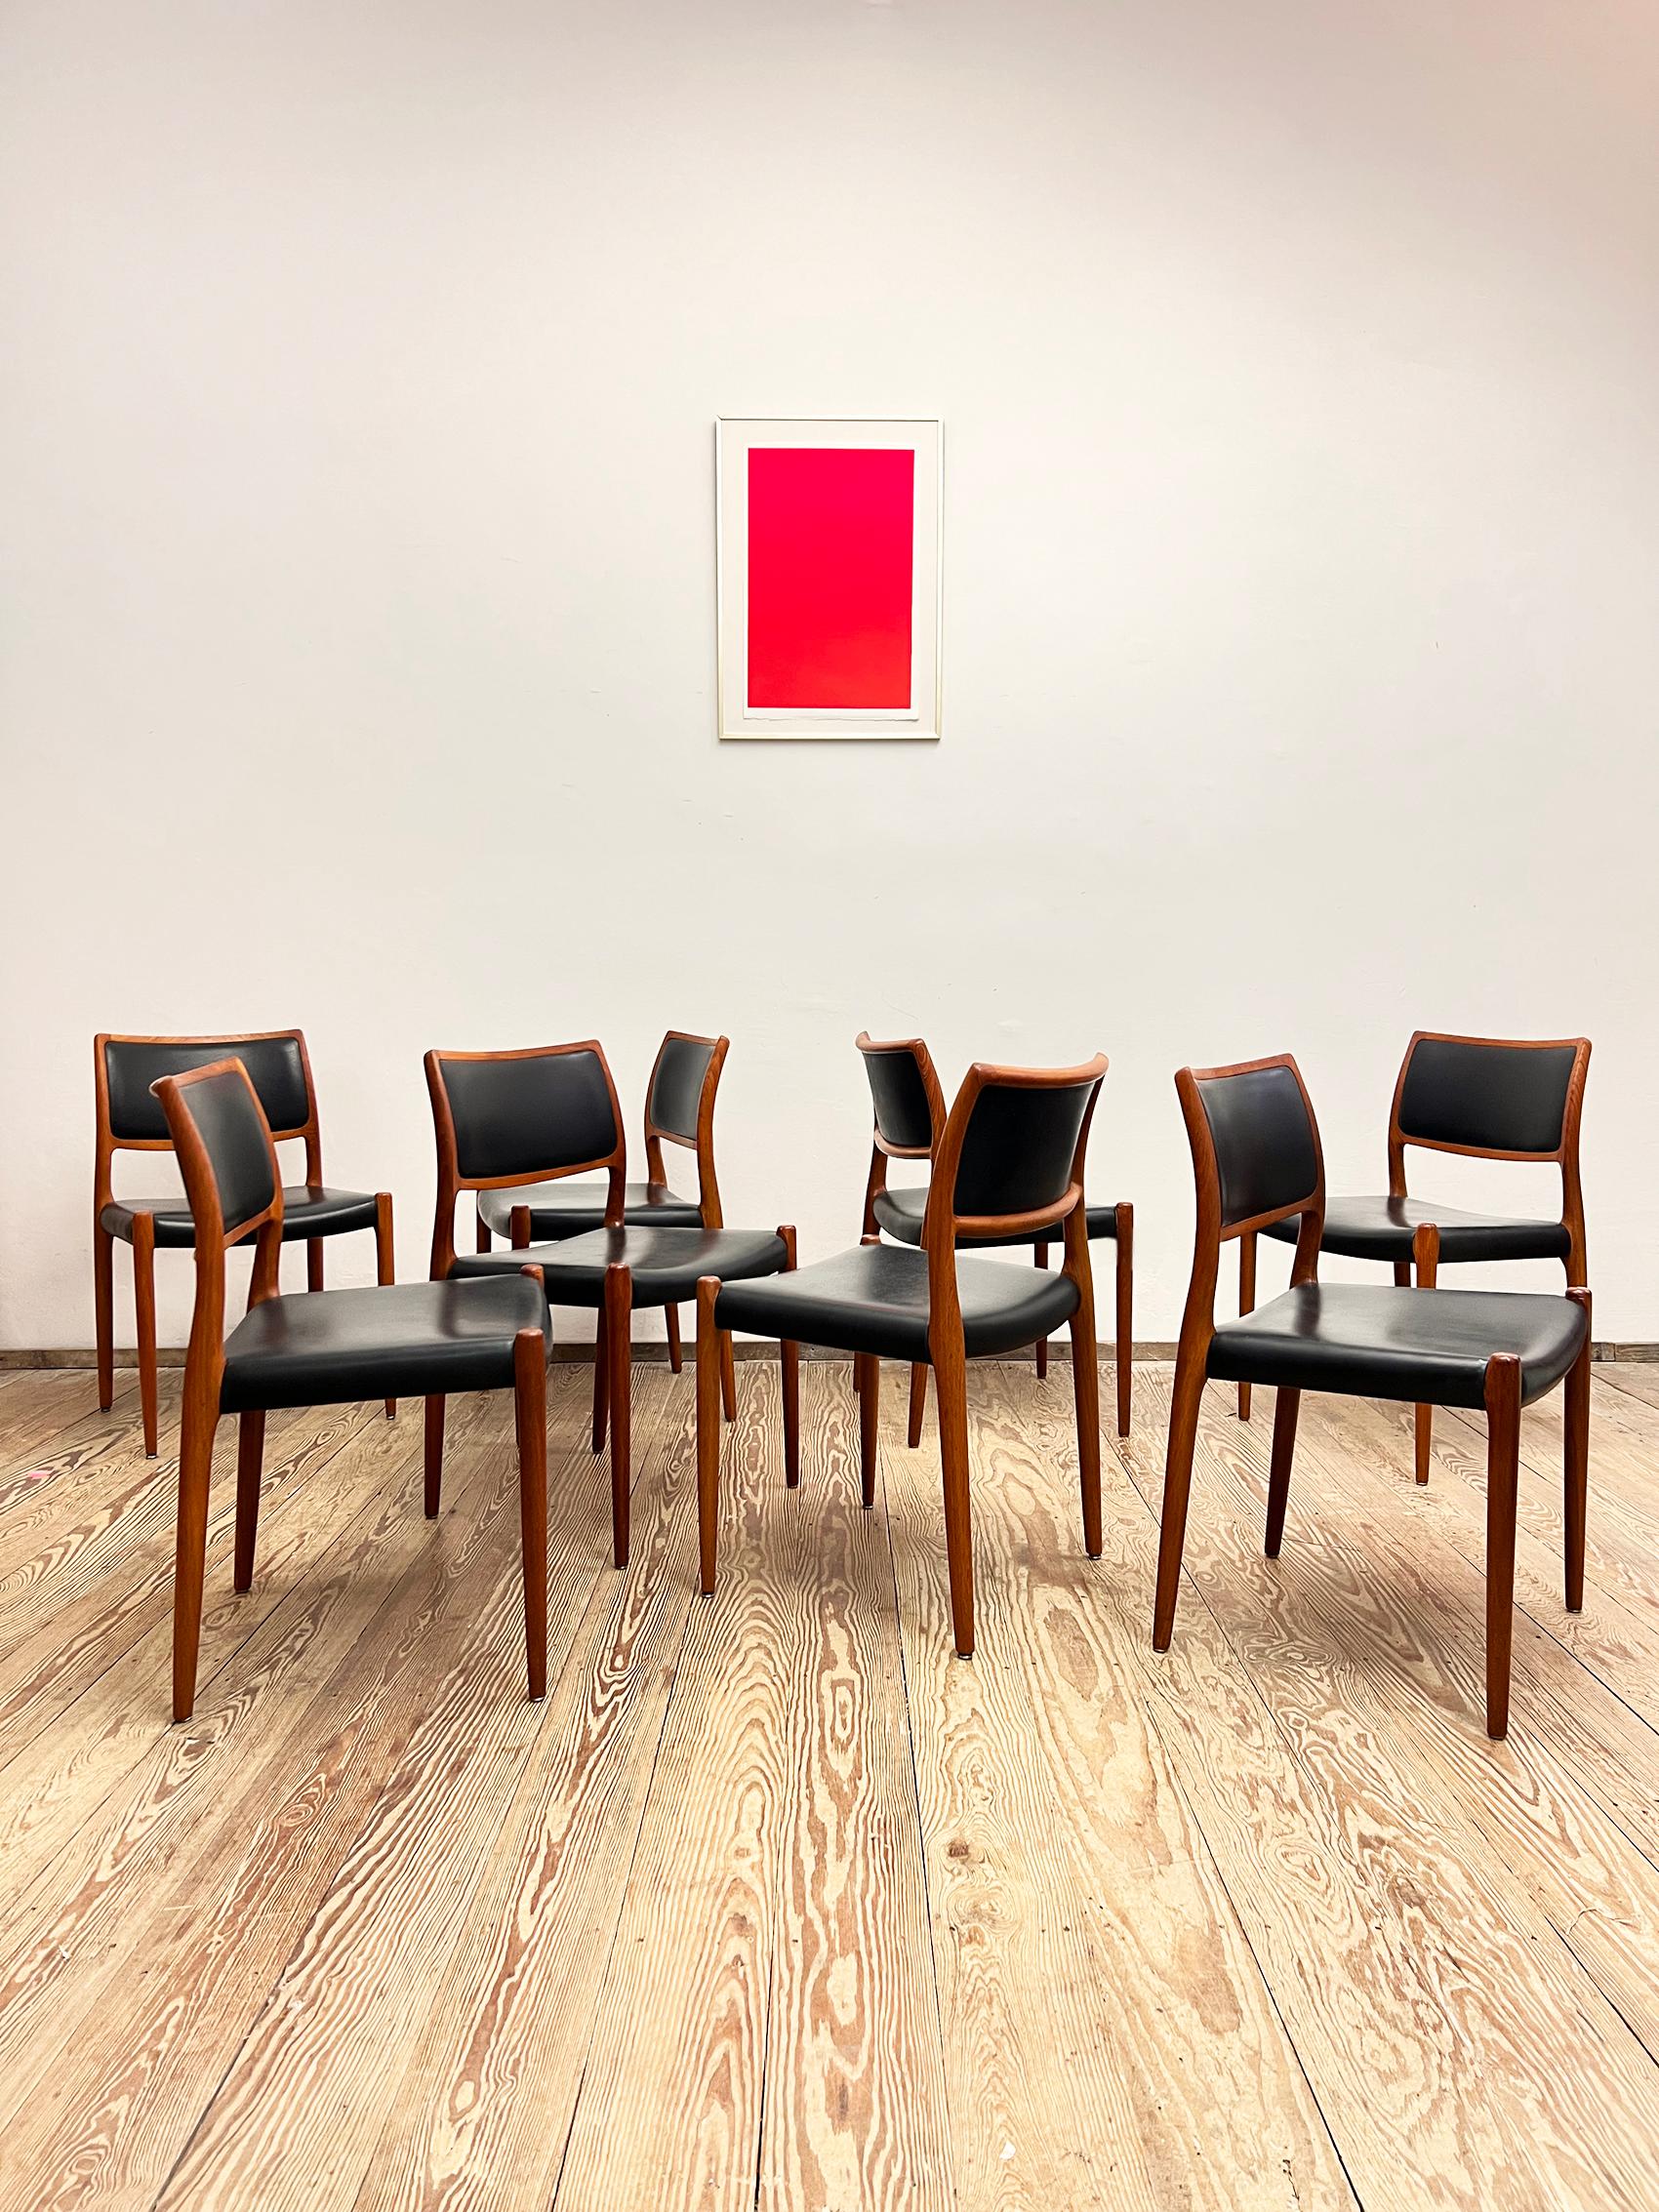 Abmessungen: 48x50x78x44cm (Breite x Tiefe x Höhe x Sitzhöhe)

Dieses schöne Set dänischer Esszimmerstühle, entworfen von Niels O. Møller in den späten 1960er Jahren, wurde von J.L. hergestellt. Møllers in Dänemark. Das Set besteht aus 8 Stühlen des